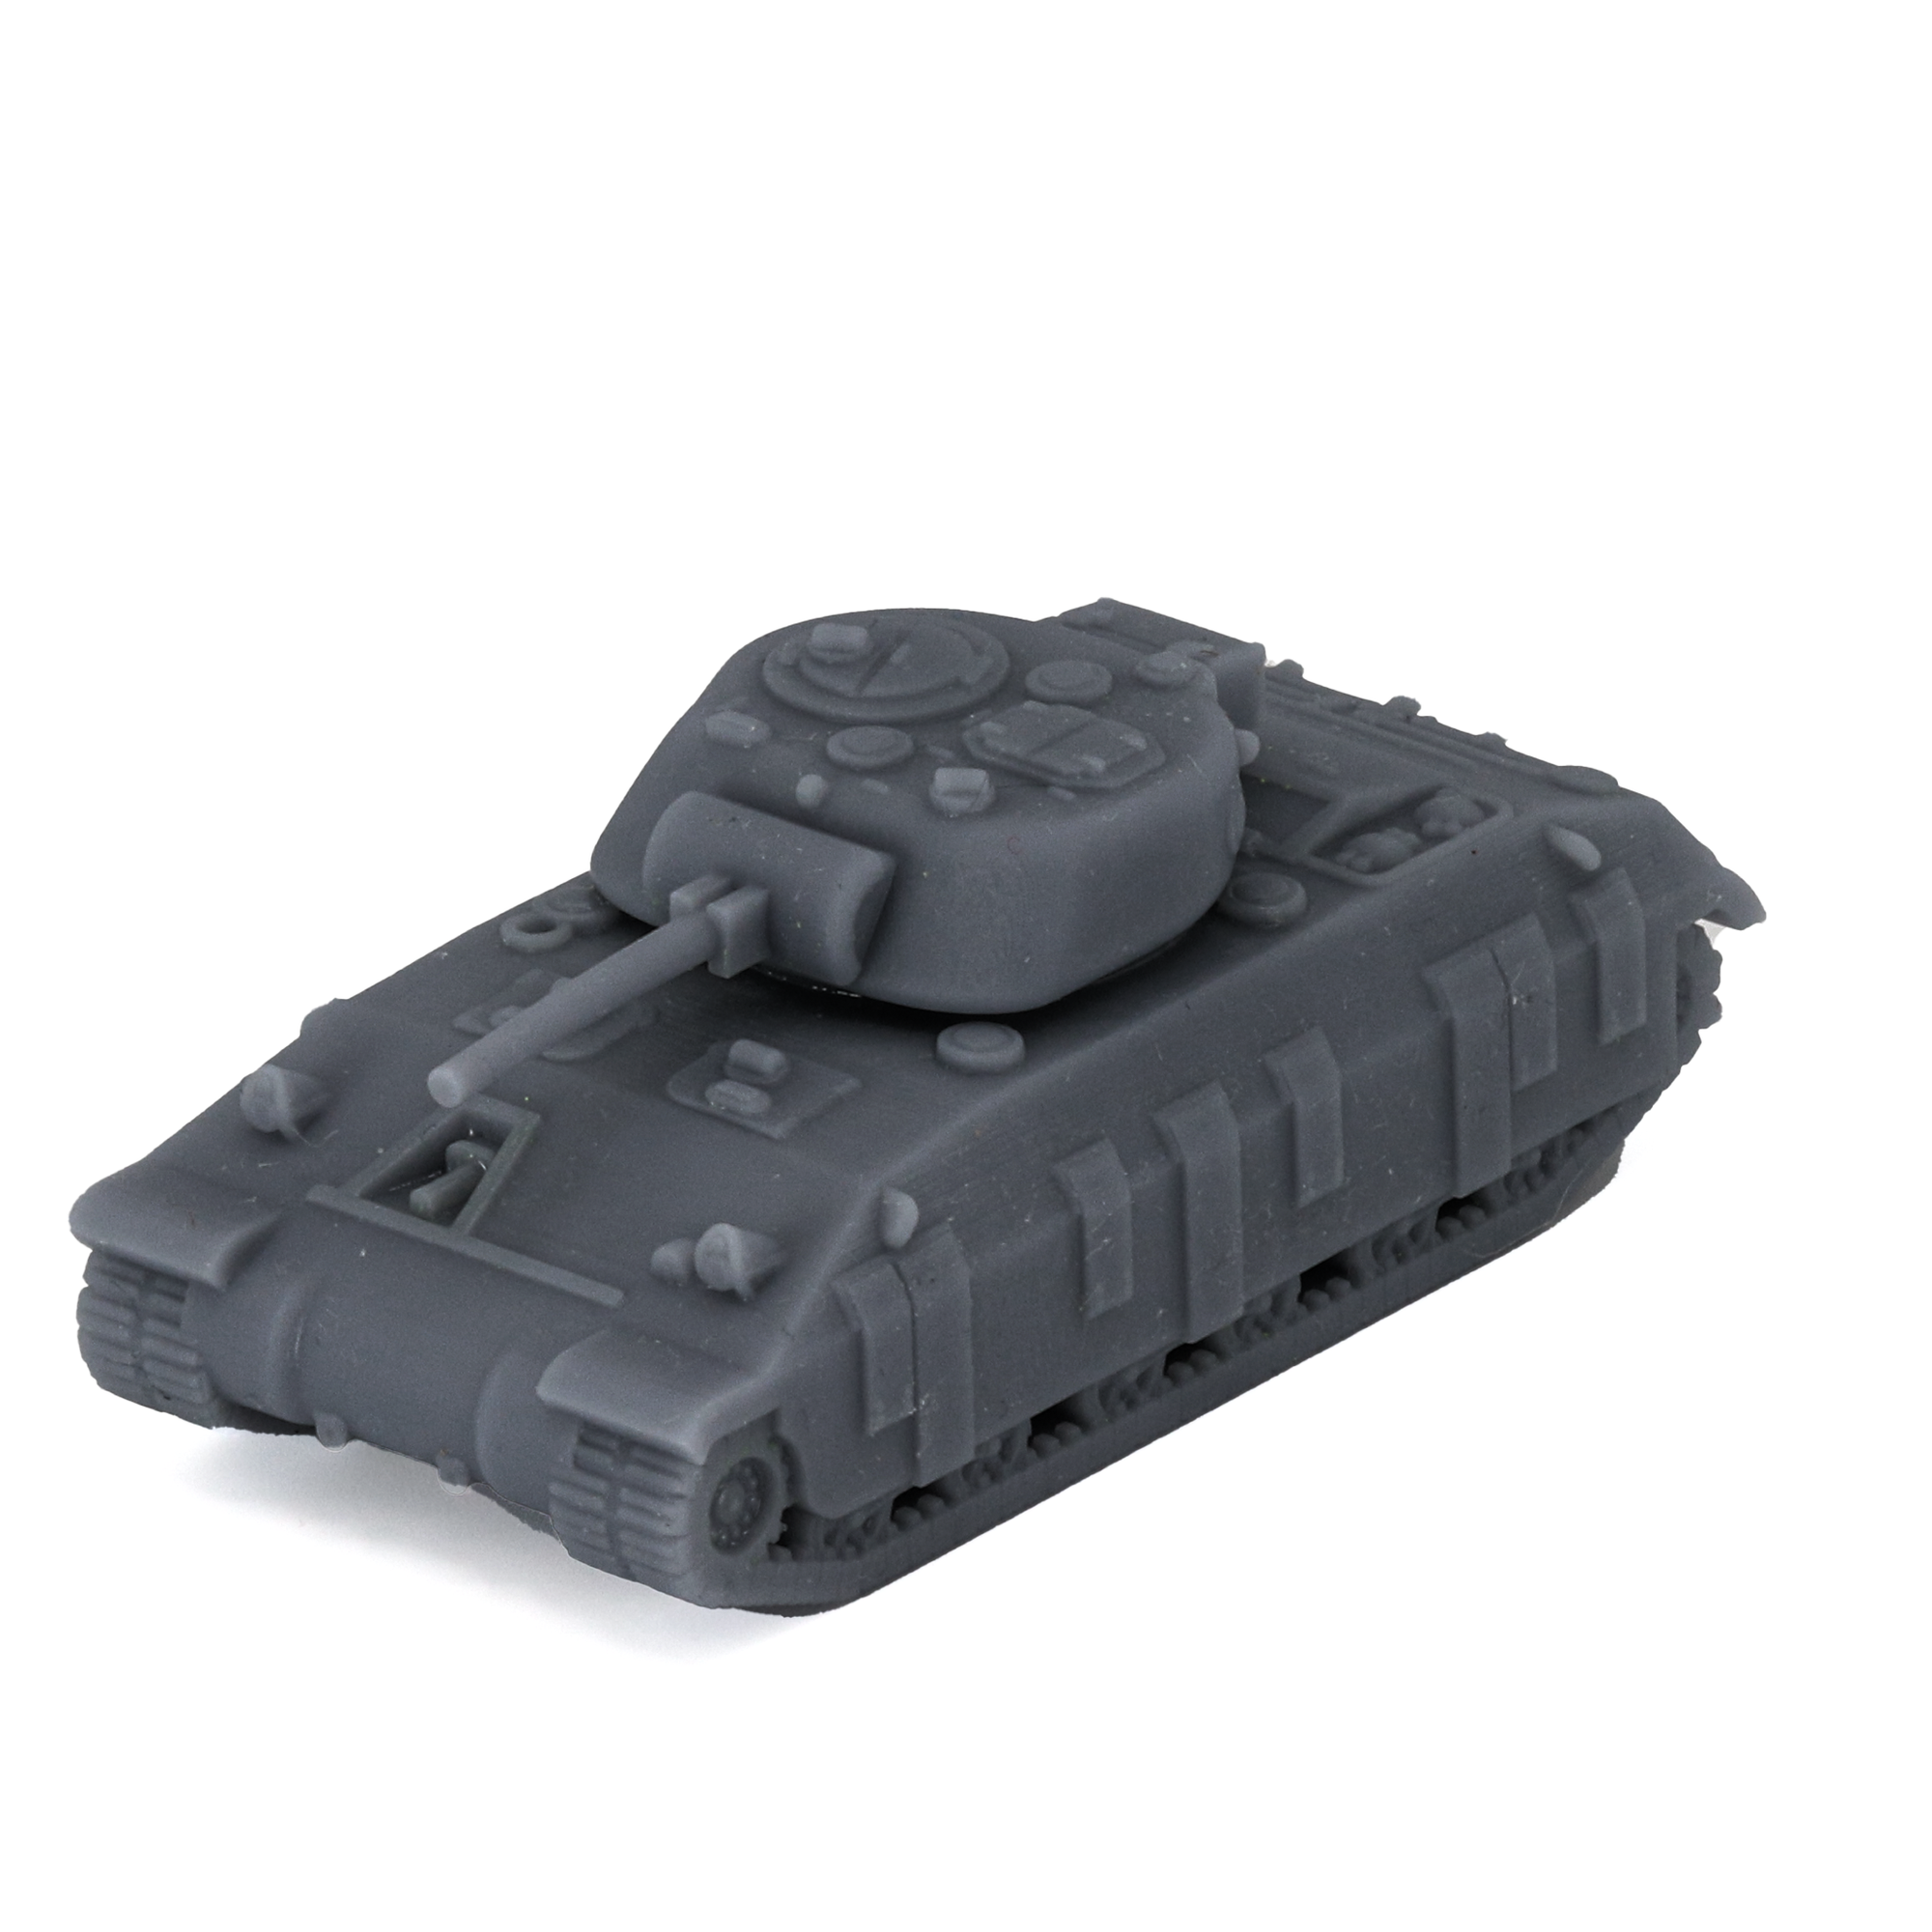 T14 Assault Tank